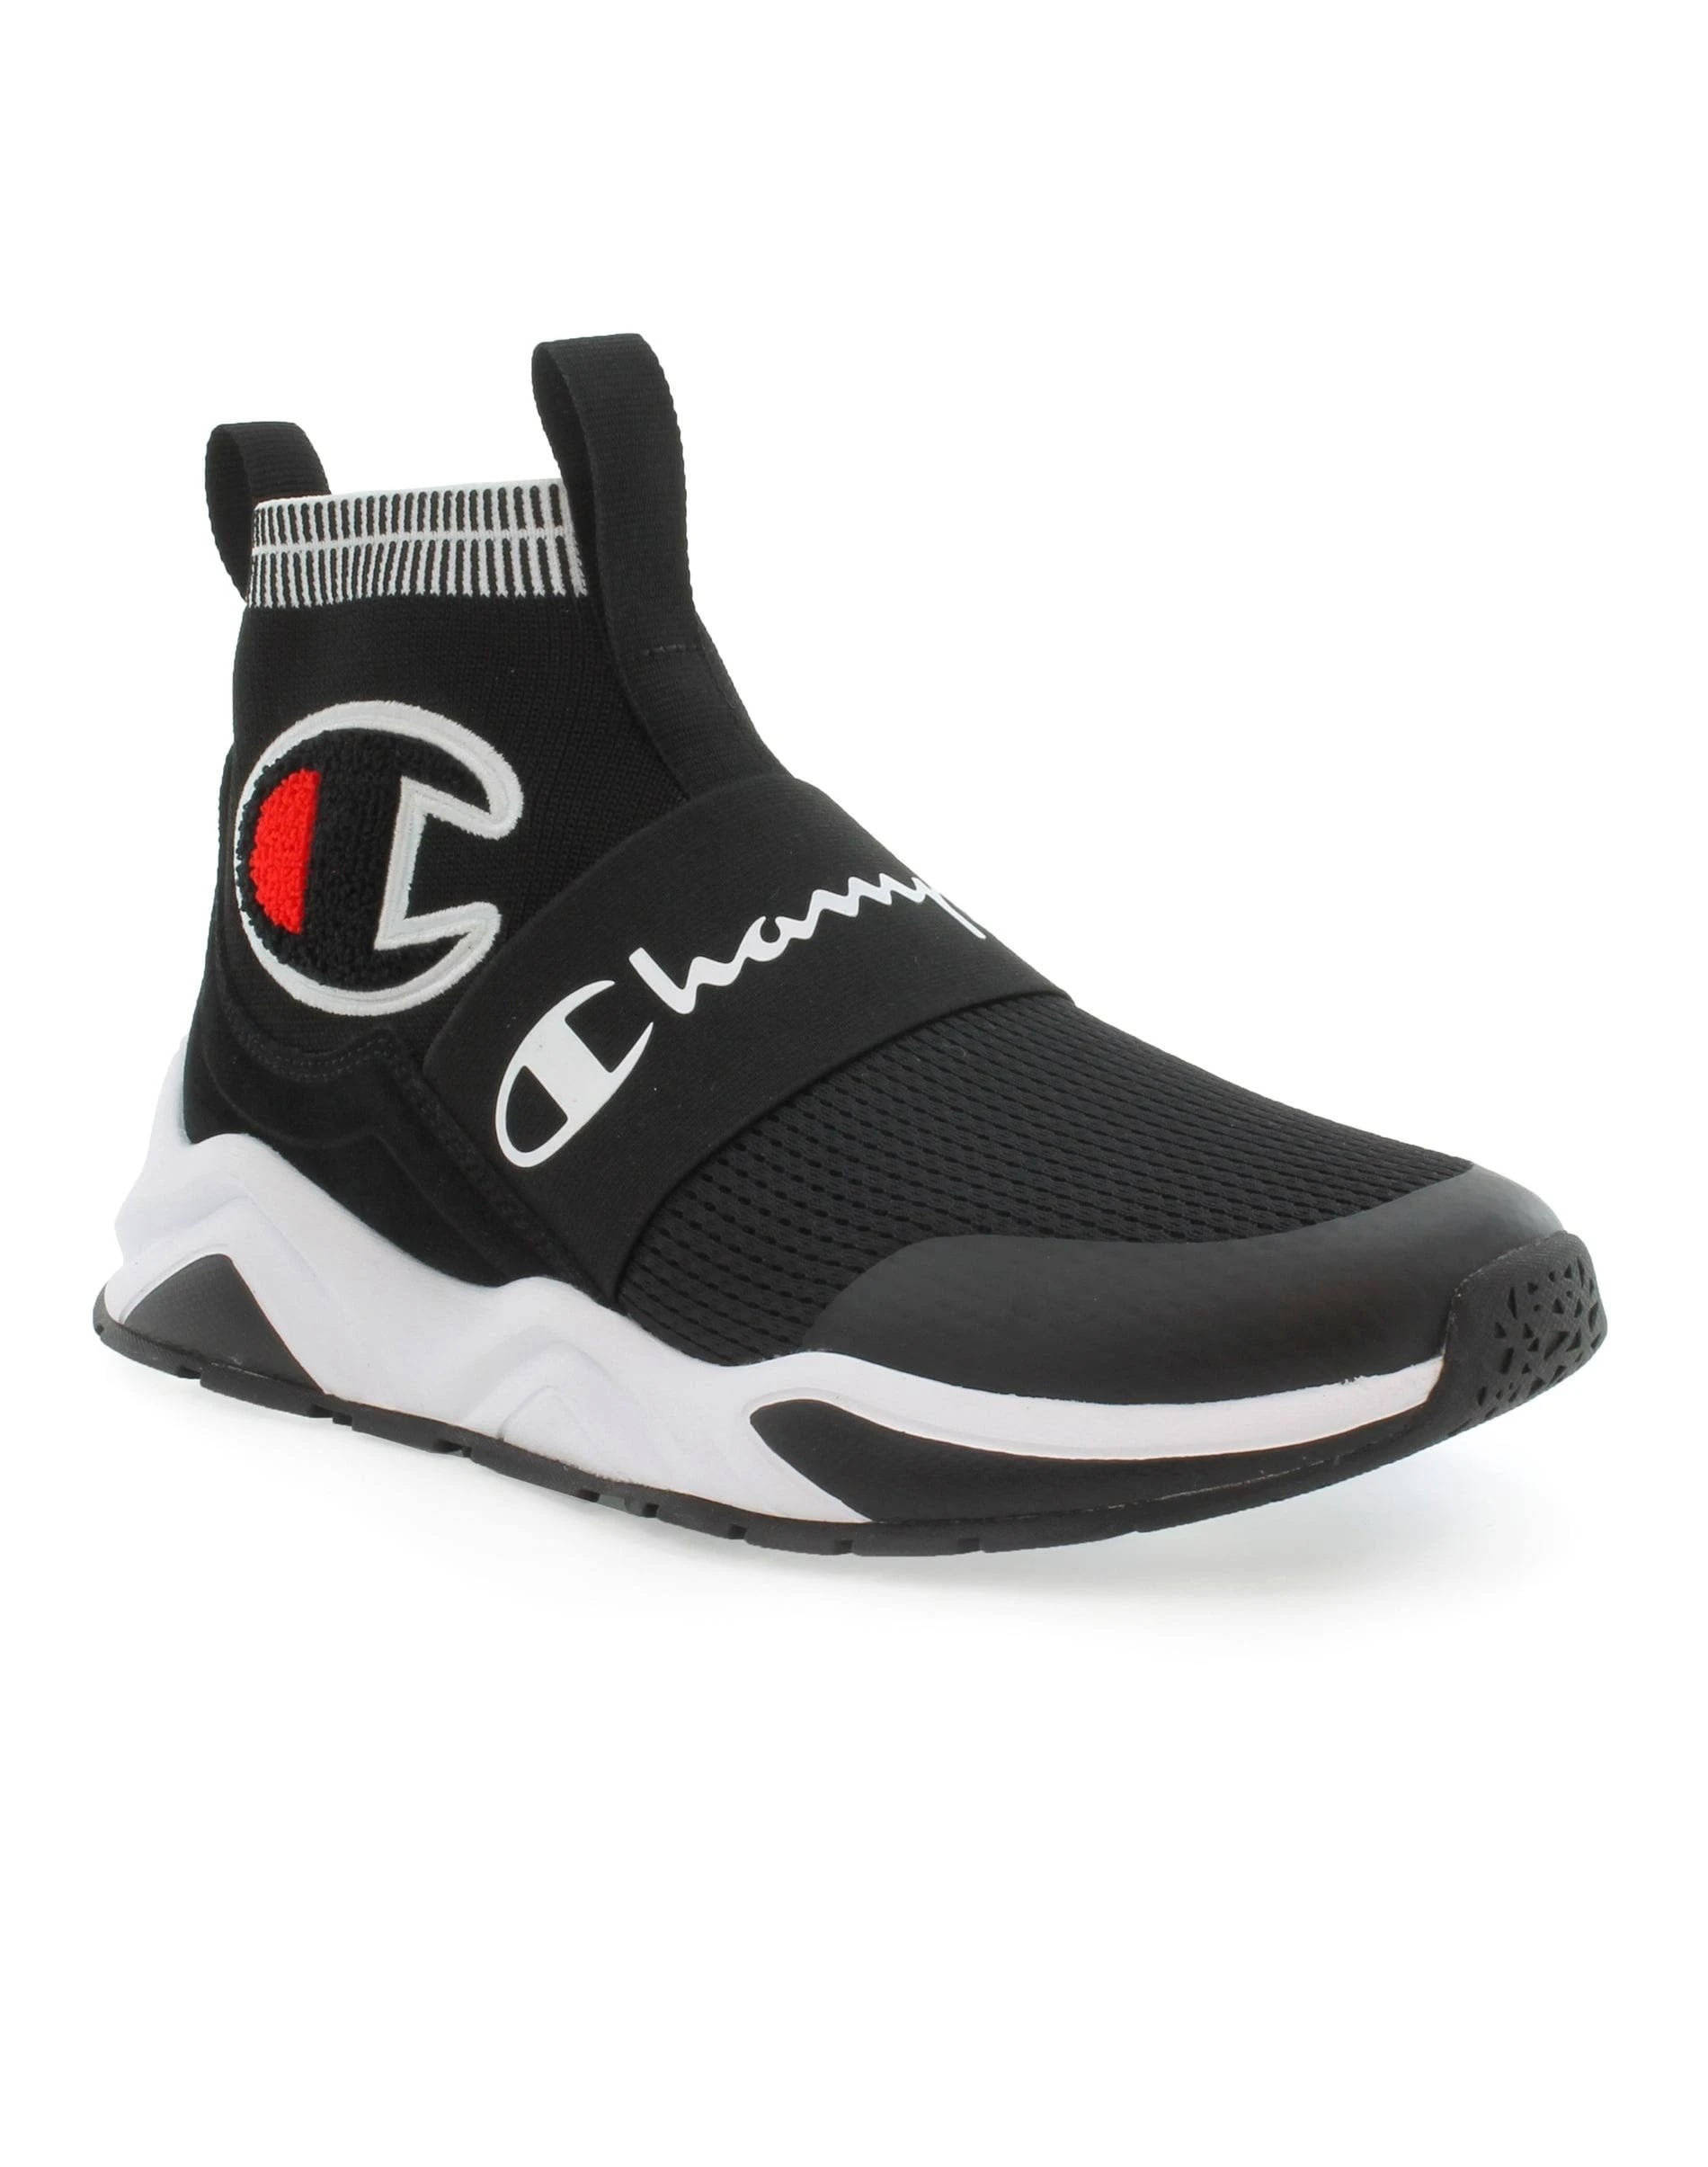 Mens XG Pro Sneaker, Adult, Black, 12 US - Walmart.com